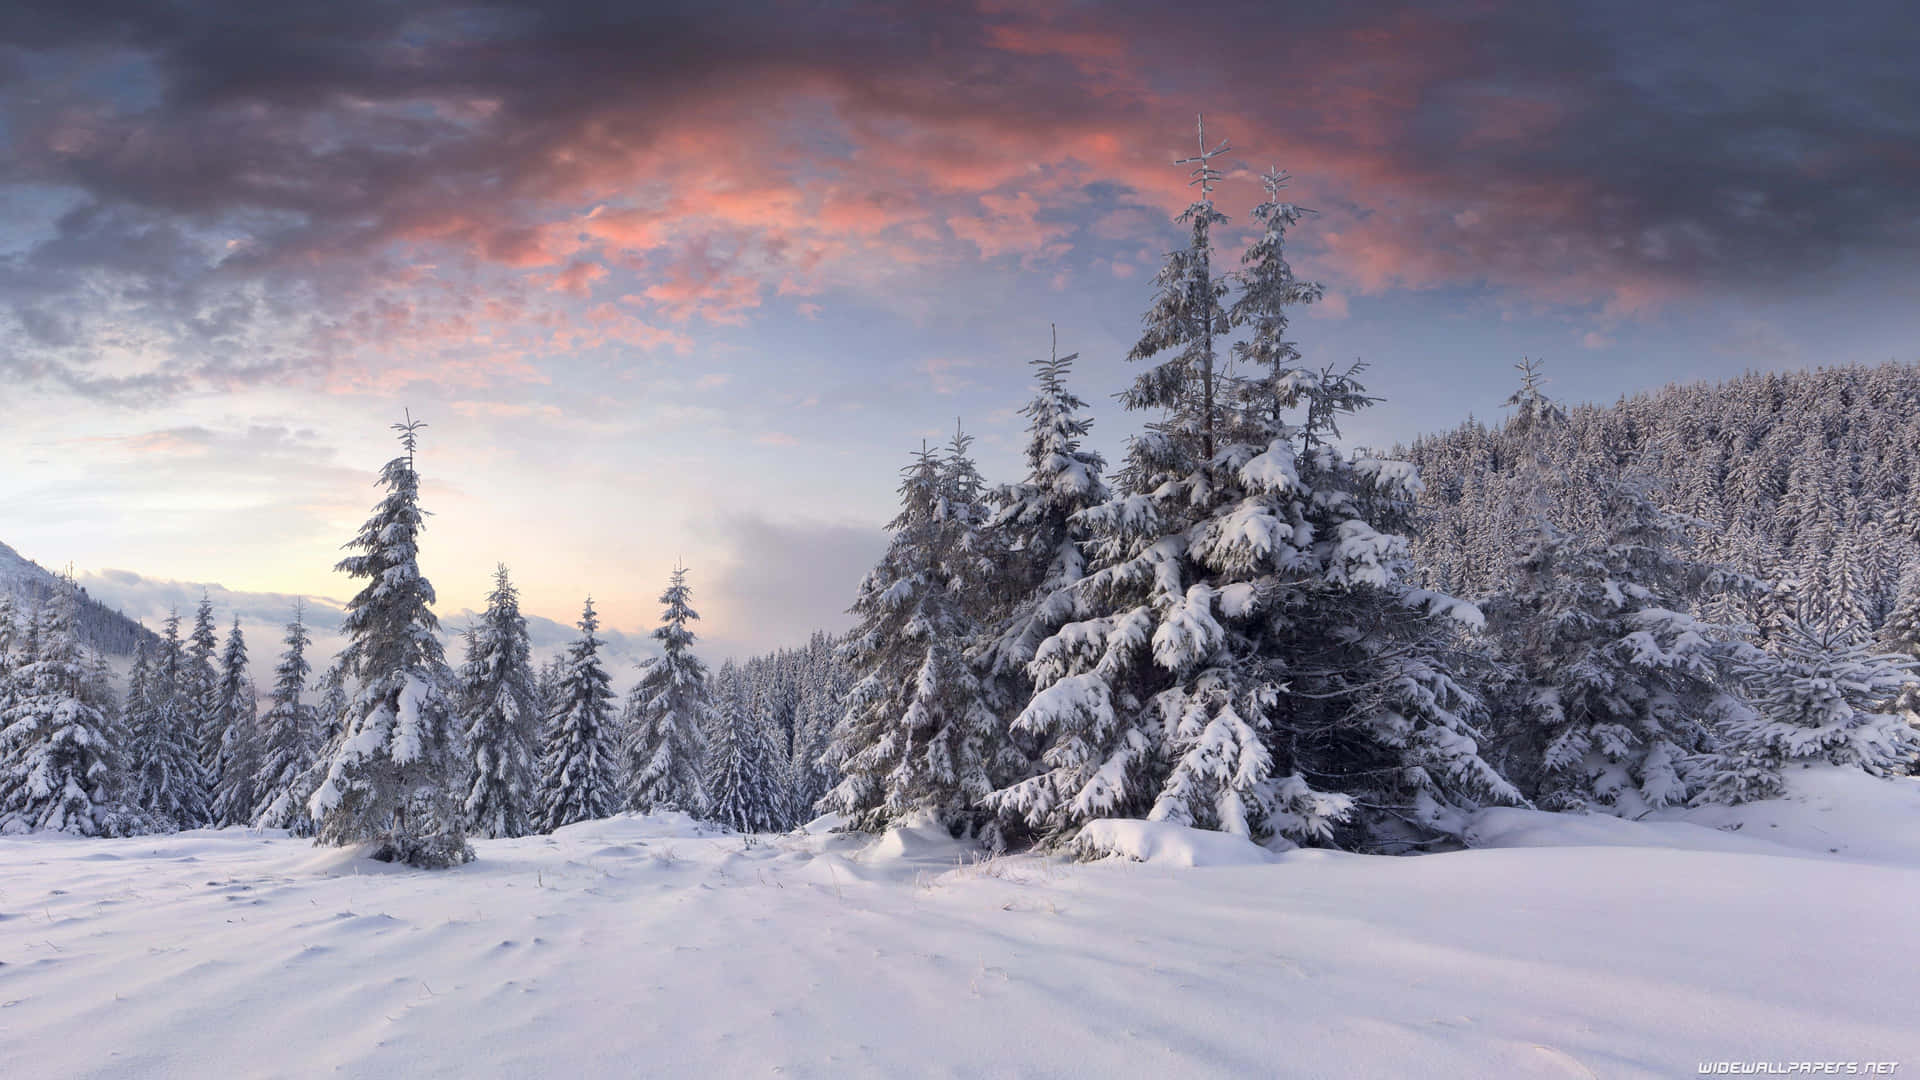 Nyd den salige vinterverden af sne-dækkede fyr og cedertræer. Wallpaper